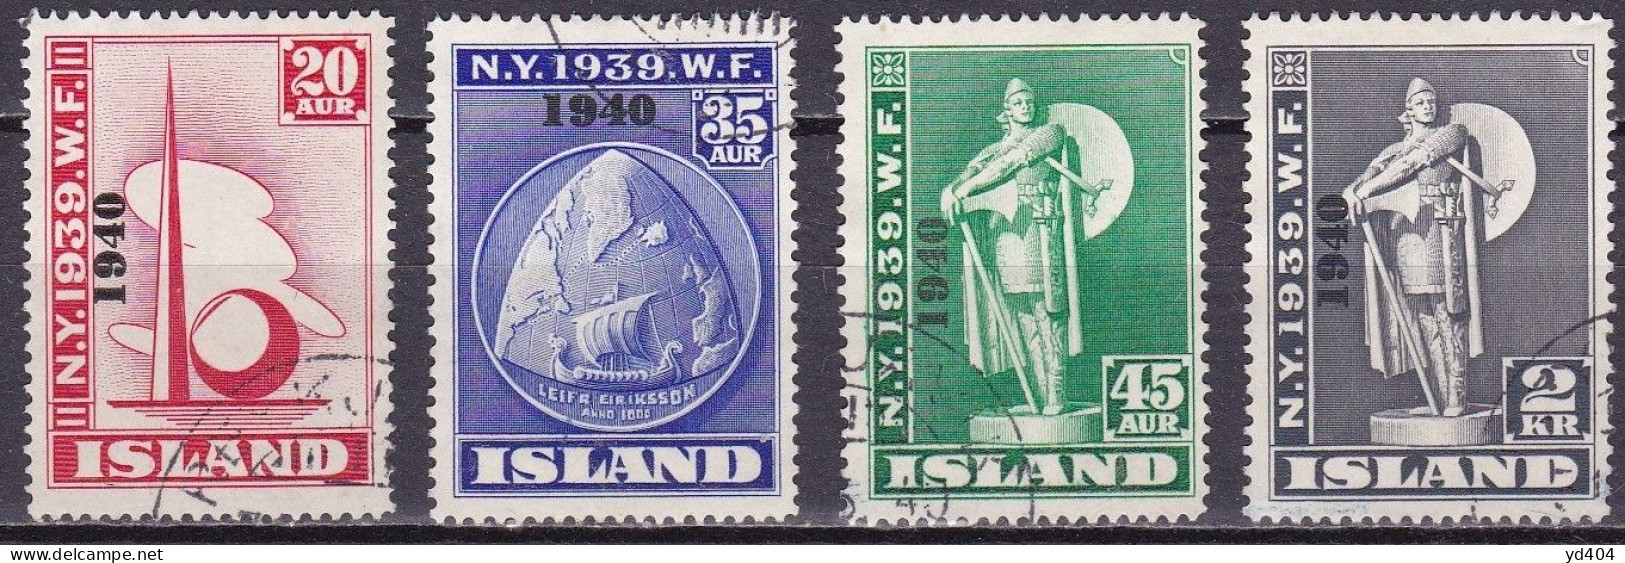 IS041 – ISLANDE – ICELAND – 1940 – NEW-YORK WORLD FAIR OVERP.– SG # 257/60 USED 680 € - Oblitérés